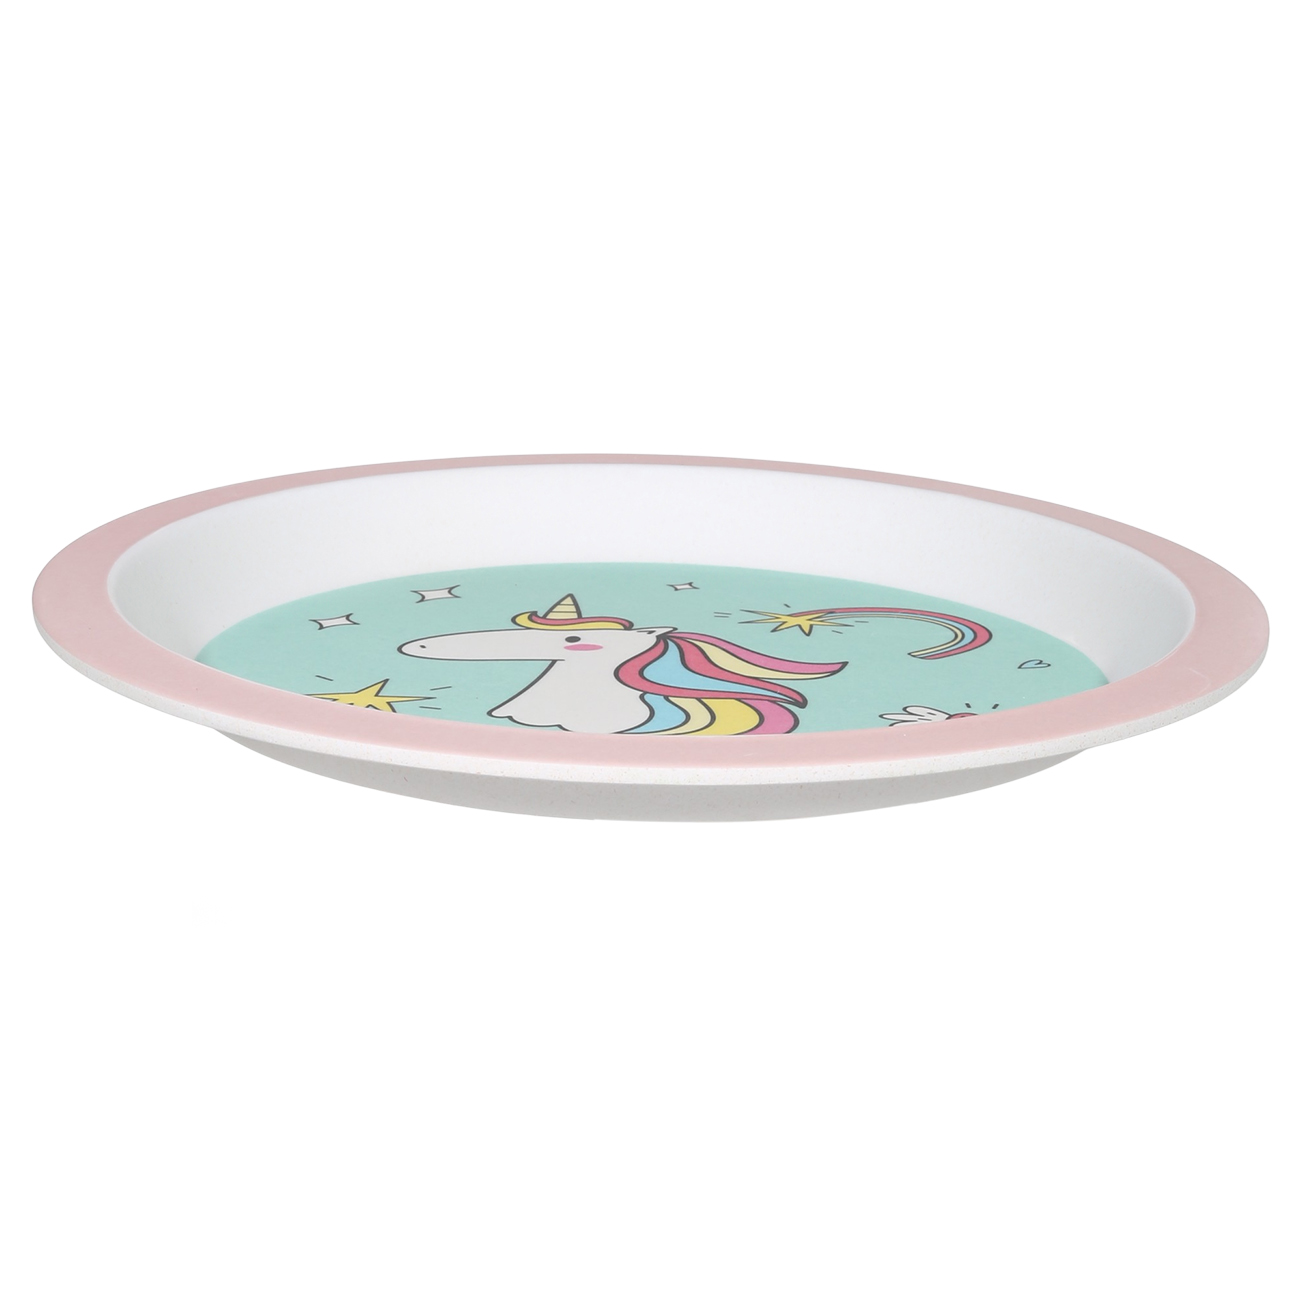 Набор посуды, детский, 5 пр, бамбук, розово-мятный, Единорог, Unicorn изображение № 7